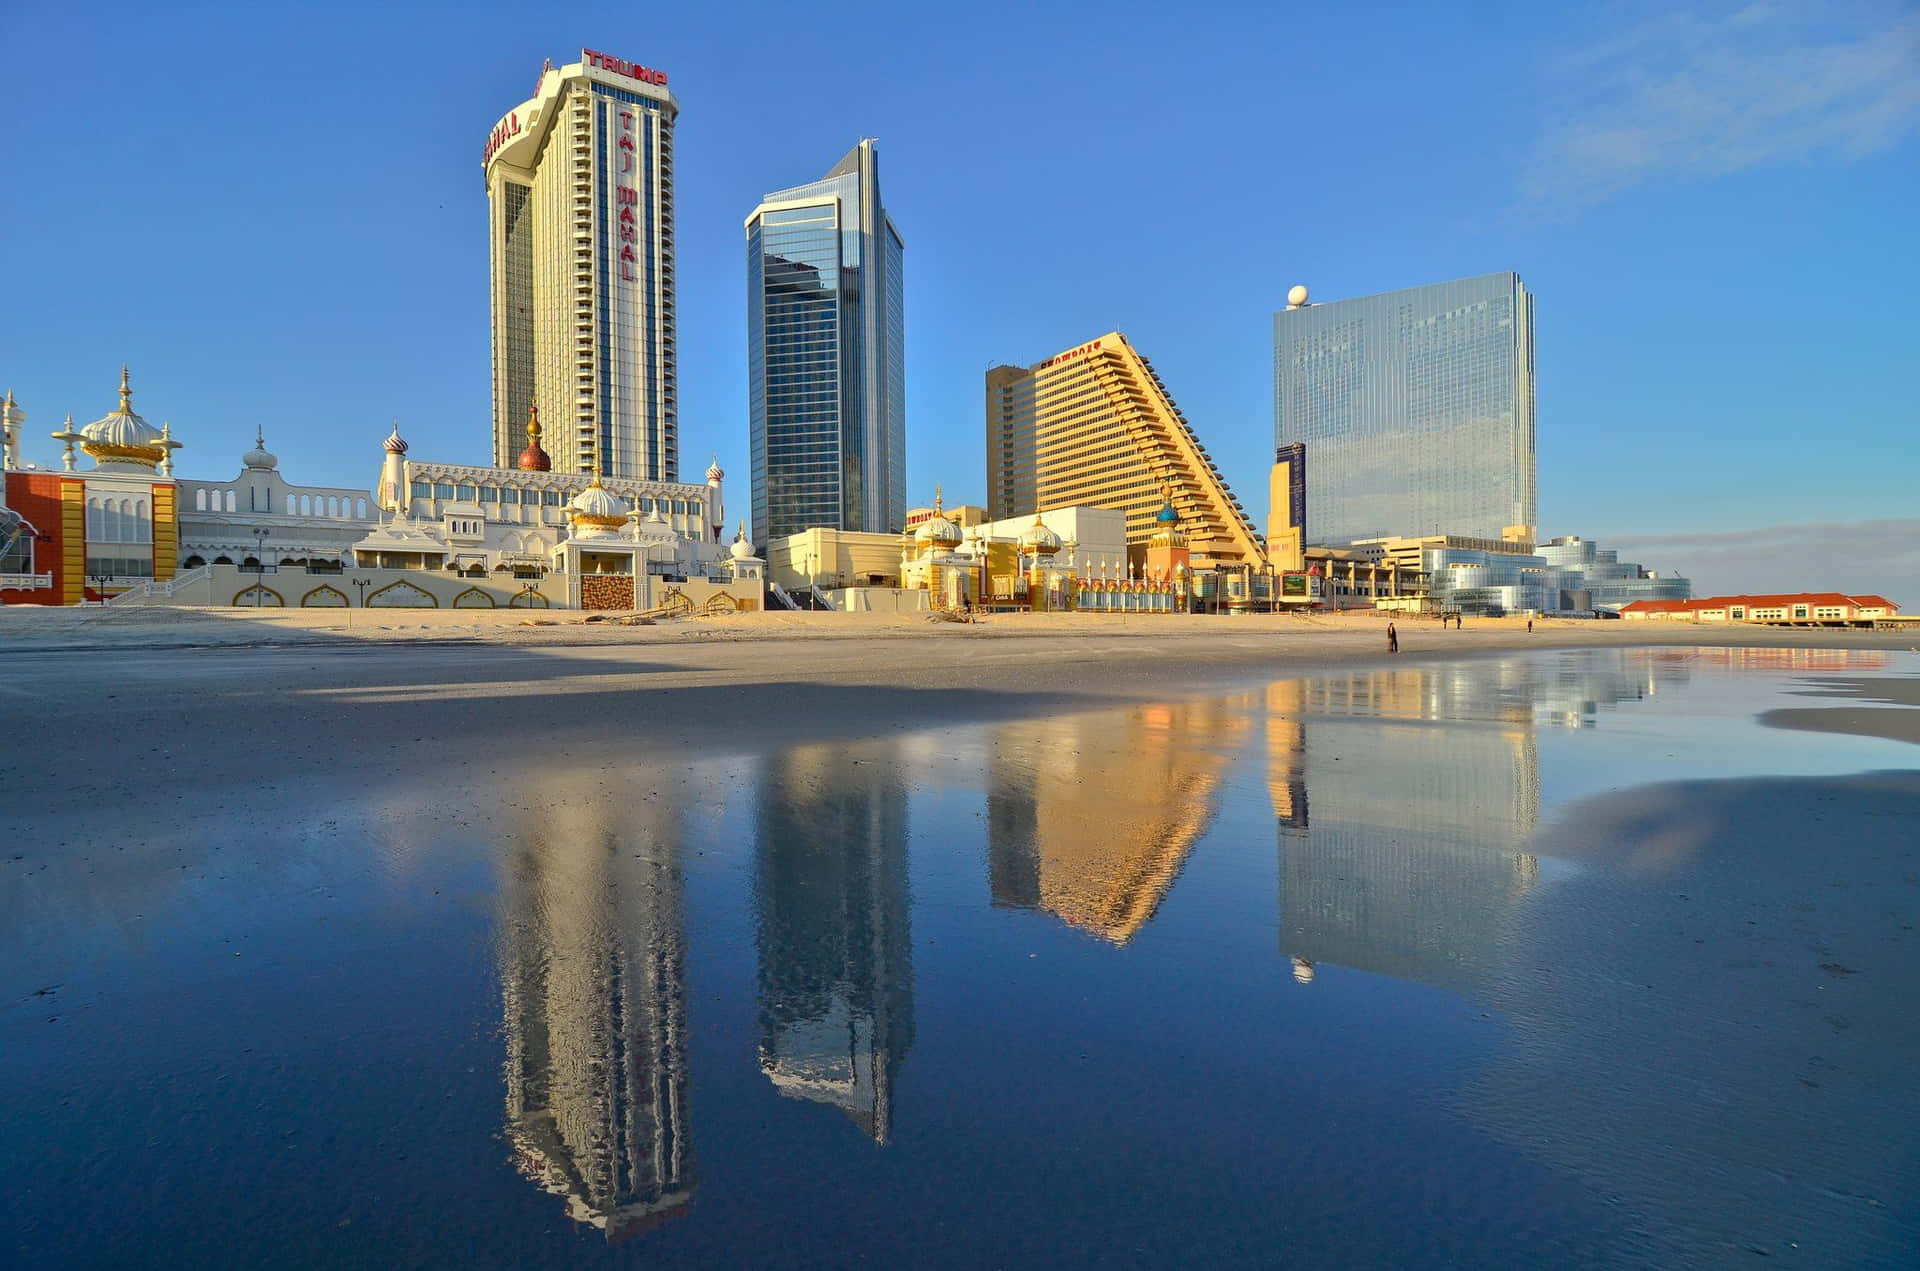 Imagende Los Edificios De Atlantic City Con Reflejo En Contexto De Fondos De Pantalla Para Ordenadores O Móviles.